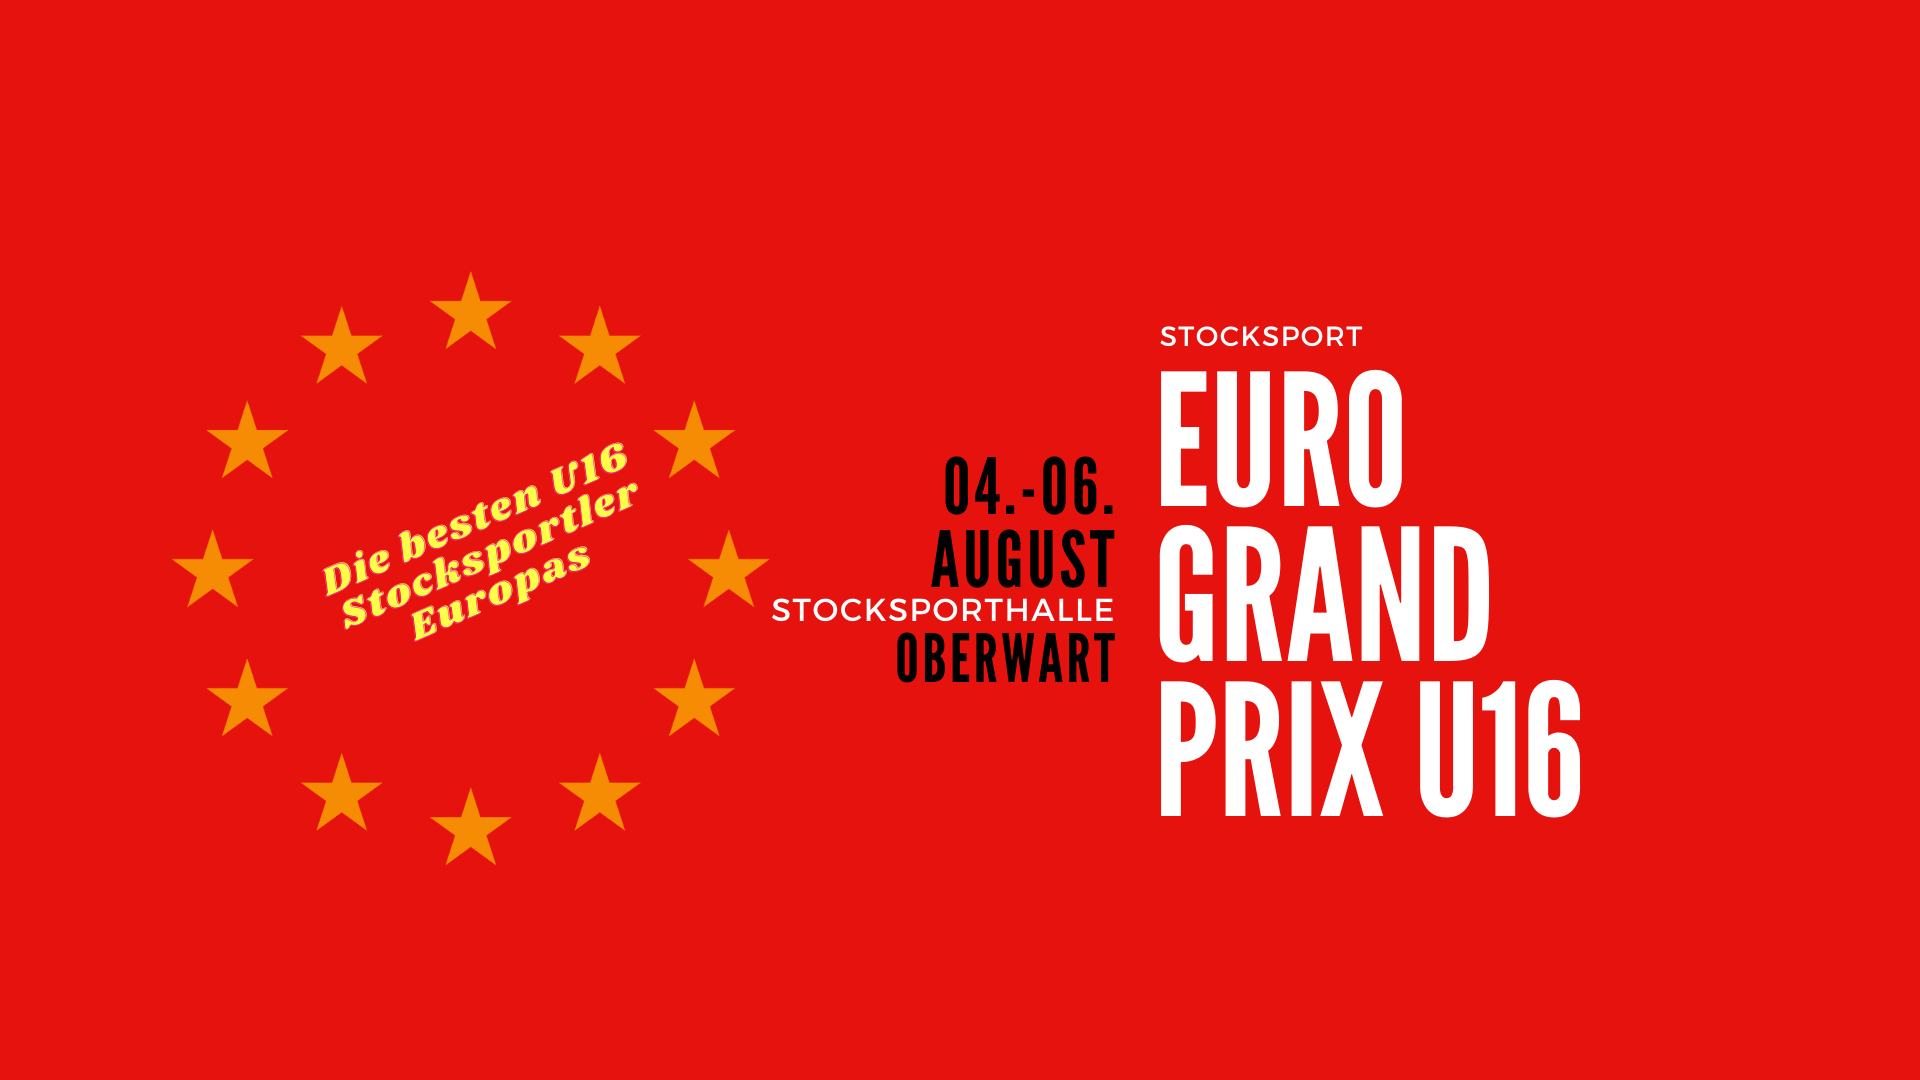 Coming next: Euro Grand Prix U16 in Oberwart